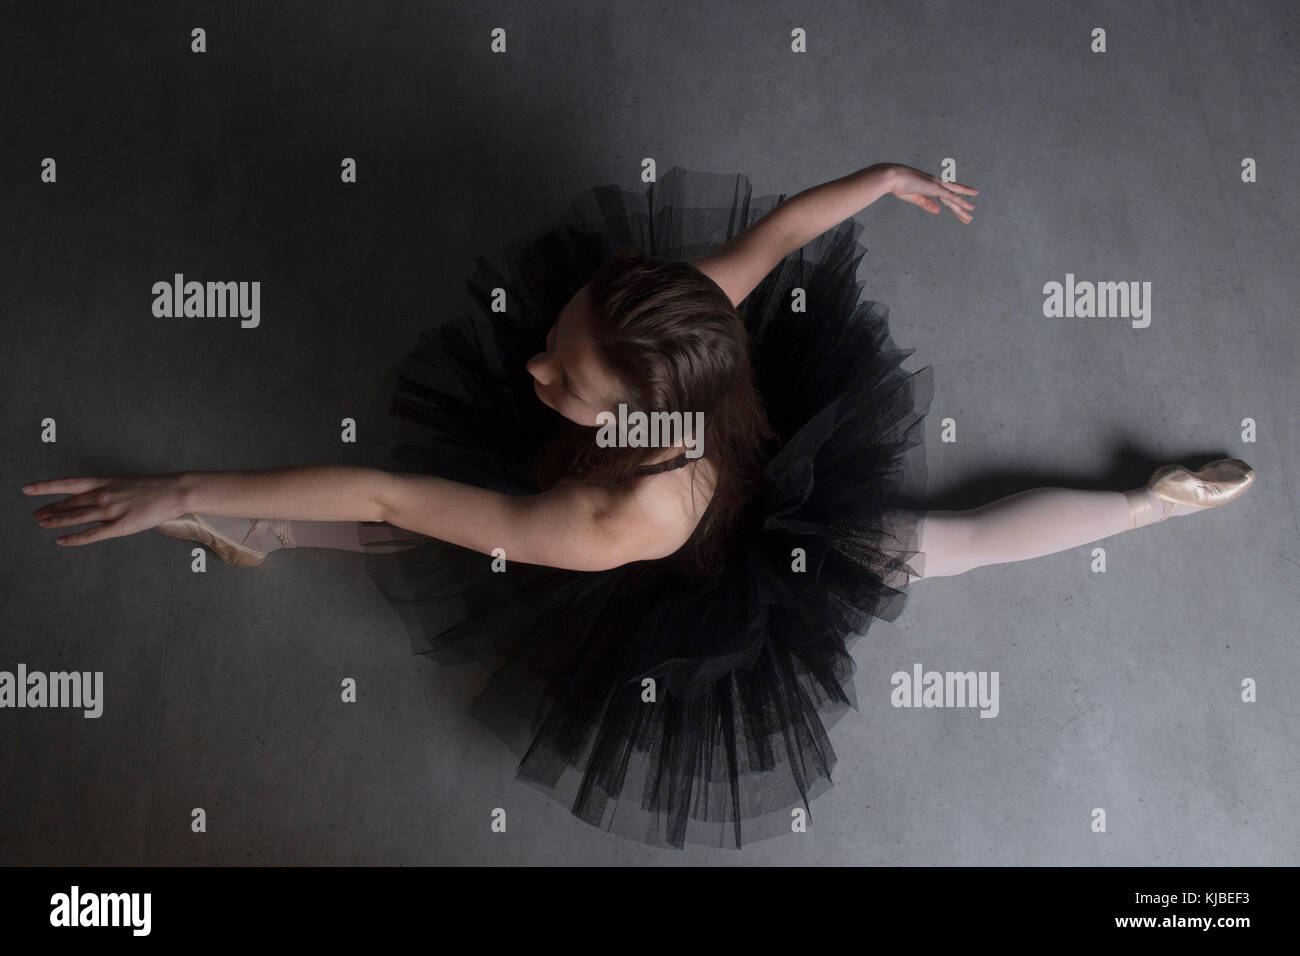 Ballet Second Position Stockfotos und -bilder Kaufen - Alamy